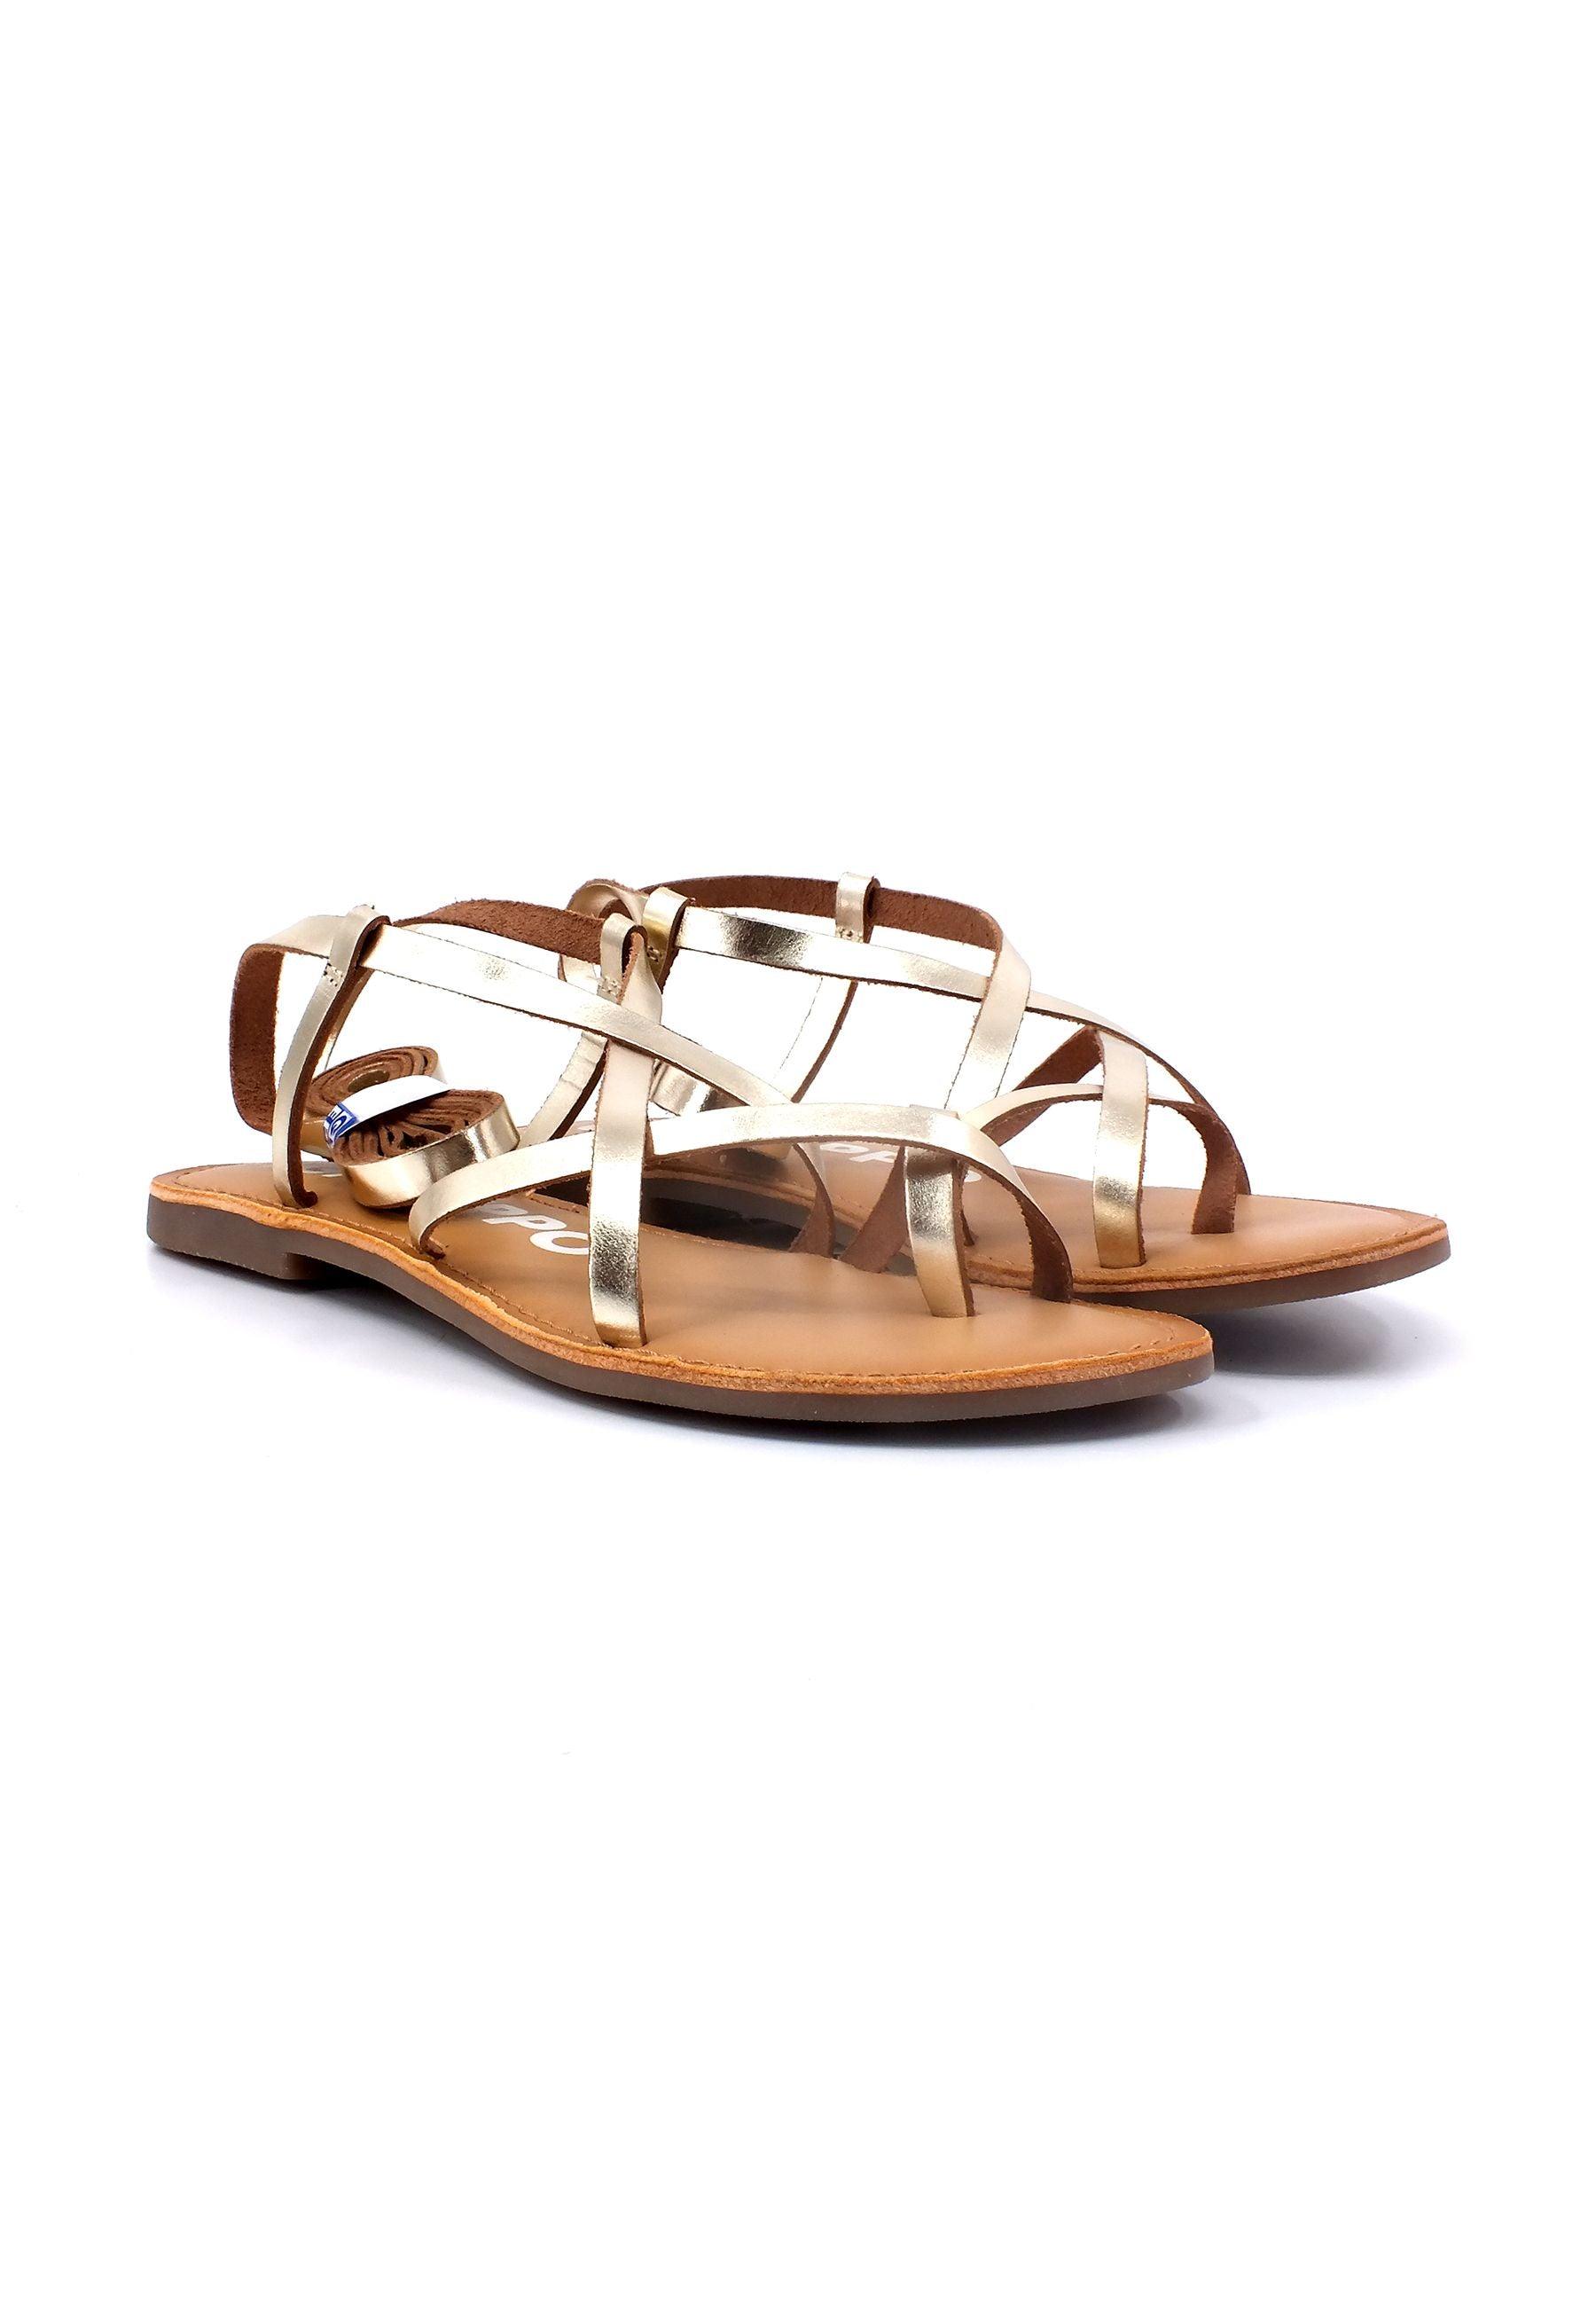 GIOSEPPO Lussat Sandalo Gladiator Donna Gold 69115 - Sandrini Calzature e Abbigliamento